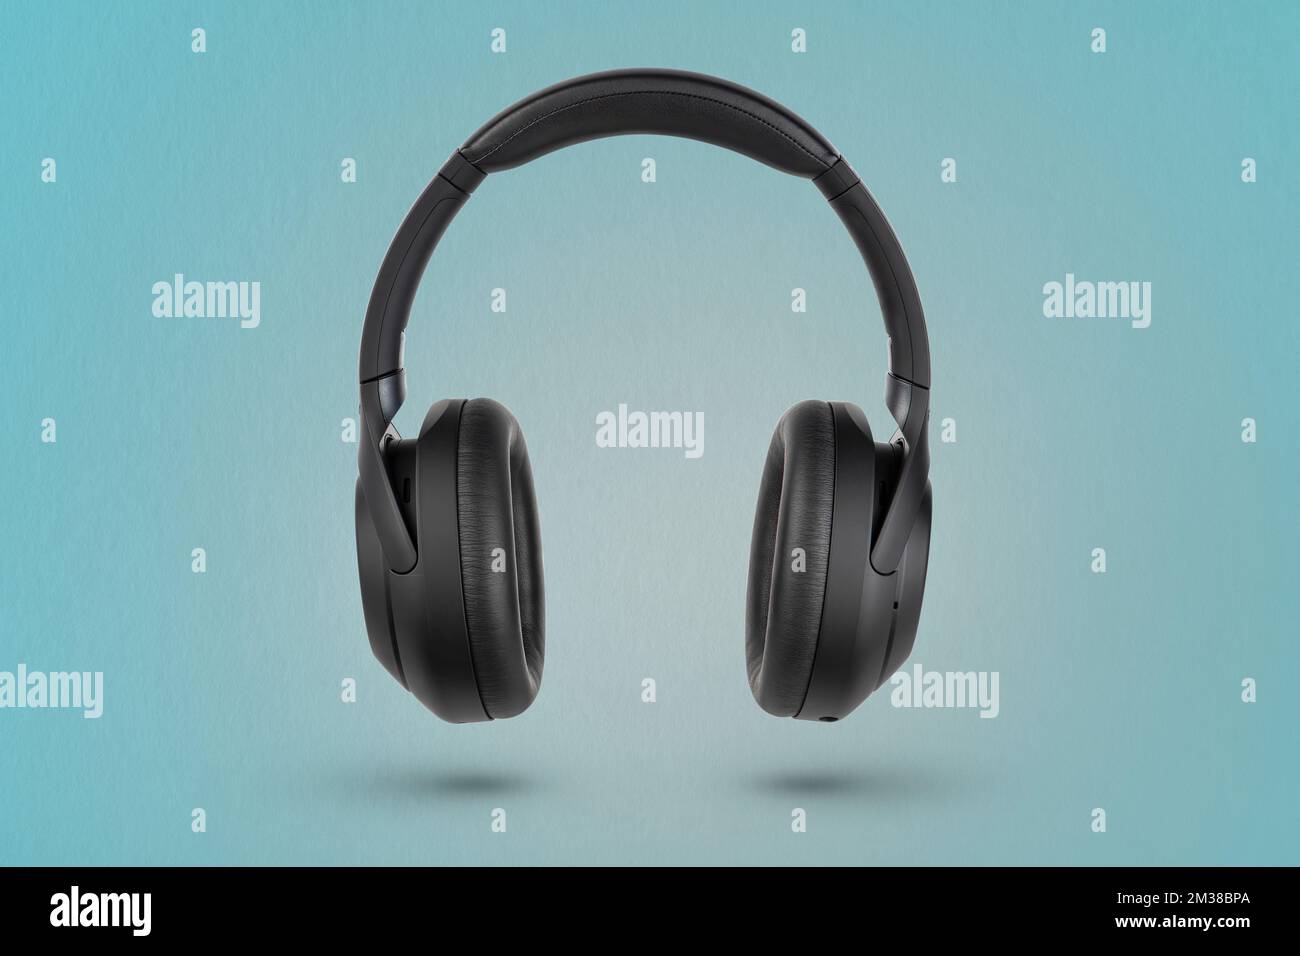 Kopfhörer auf blauem Hintergrund. Kabellose Kopfhörer in Schwarz, hohe Qualität, für Werbung oder Produktkatalog. Stockfoto